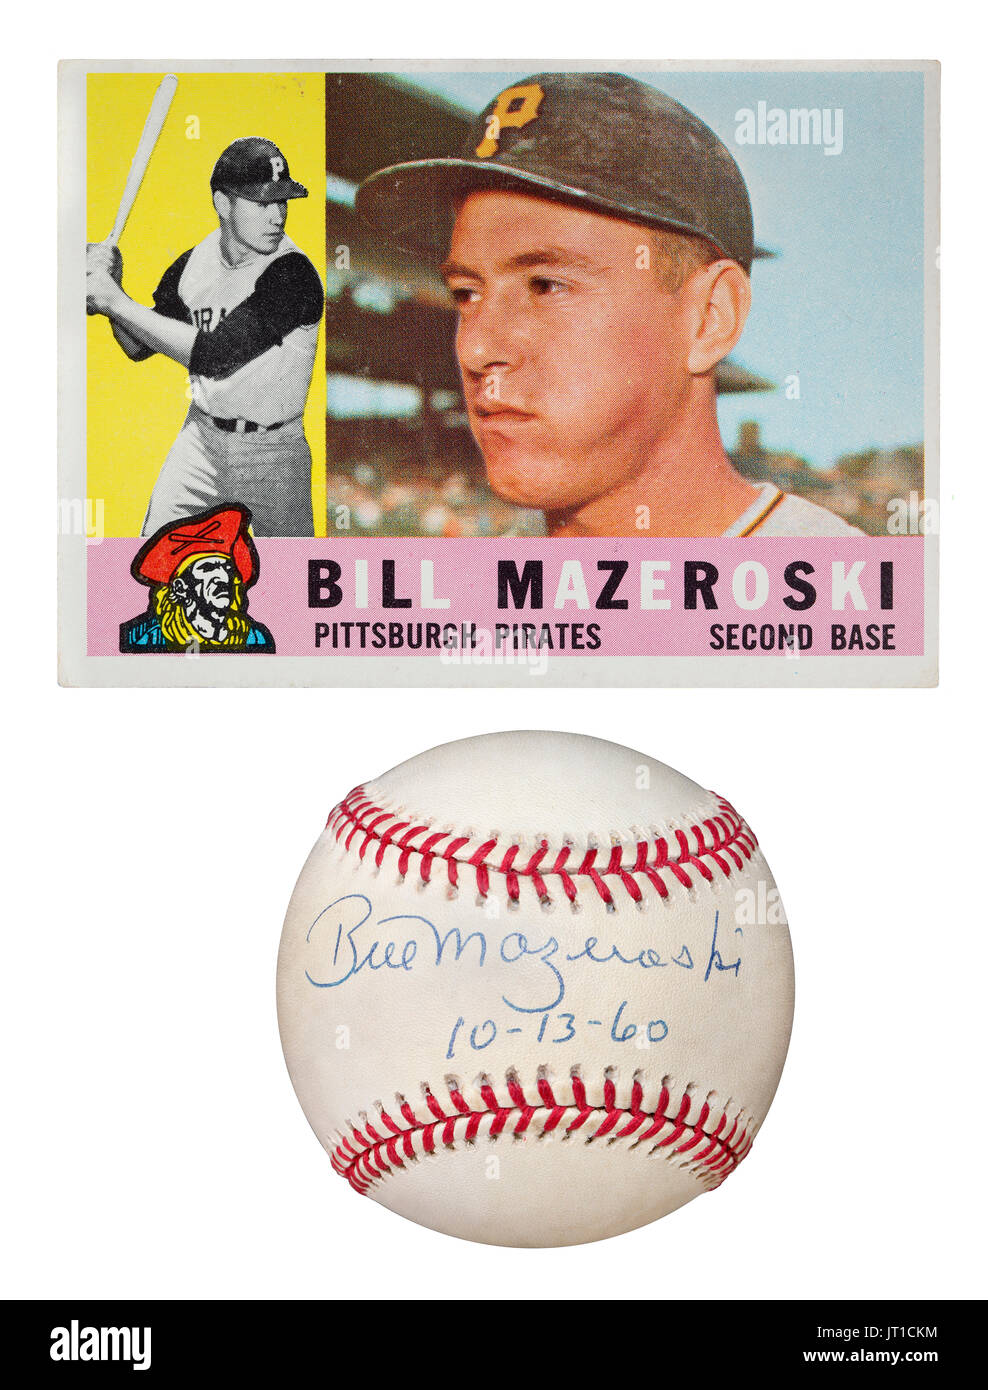 Baseball autographiée par les Pirates de Pittsburgh le deuxième but Bill Mazeroski en date du 10-13-60. Le projet de loi est le seul joueur dans l'histoire de la MLB à frapper une promenade off Page d'accueil Banque D'Images